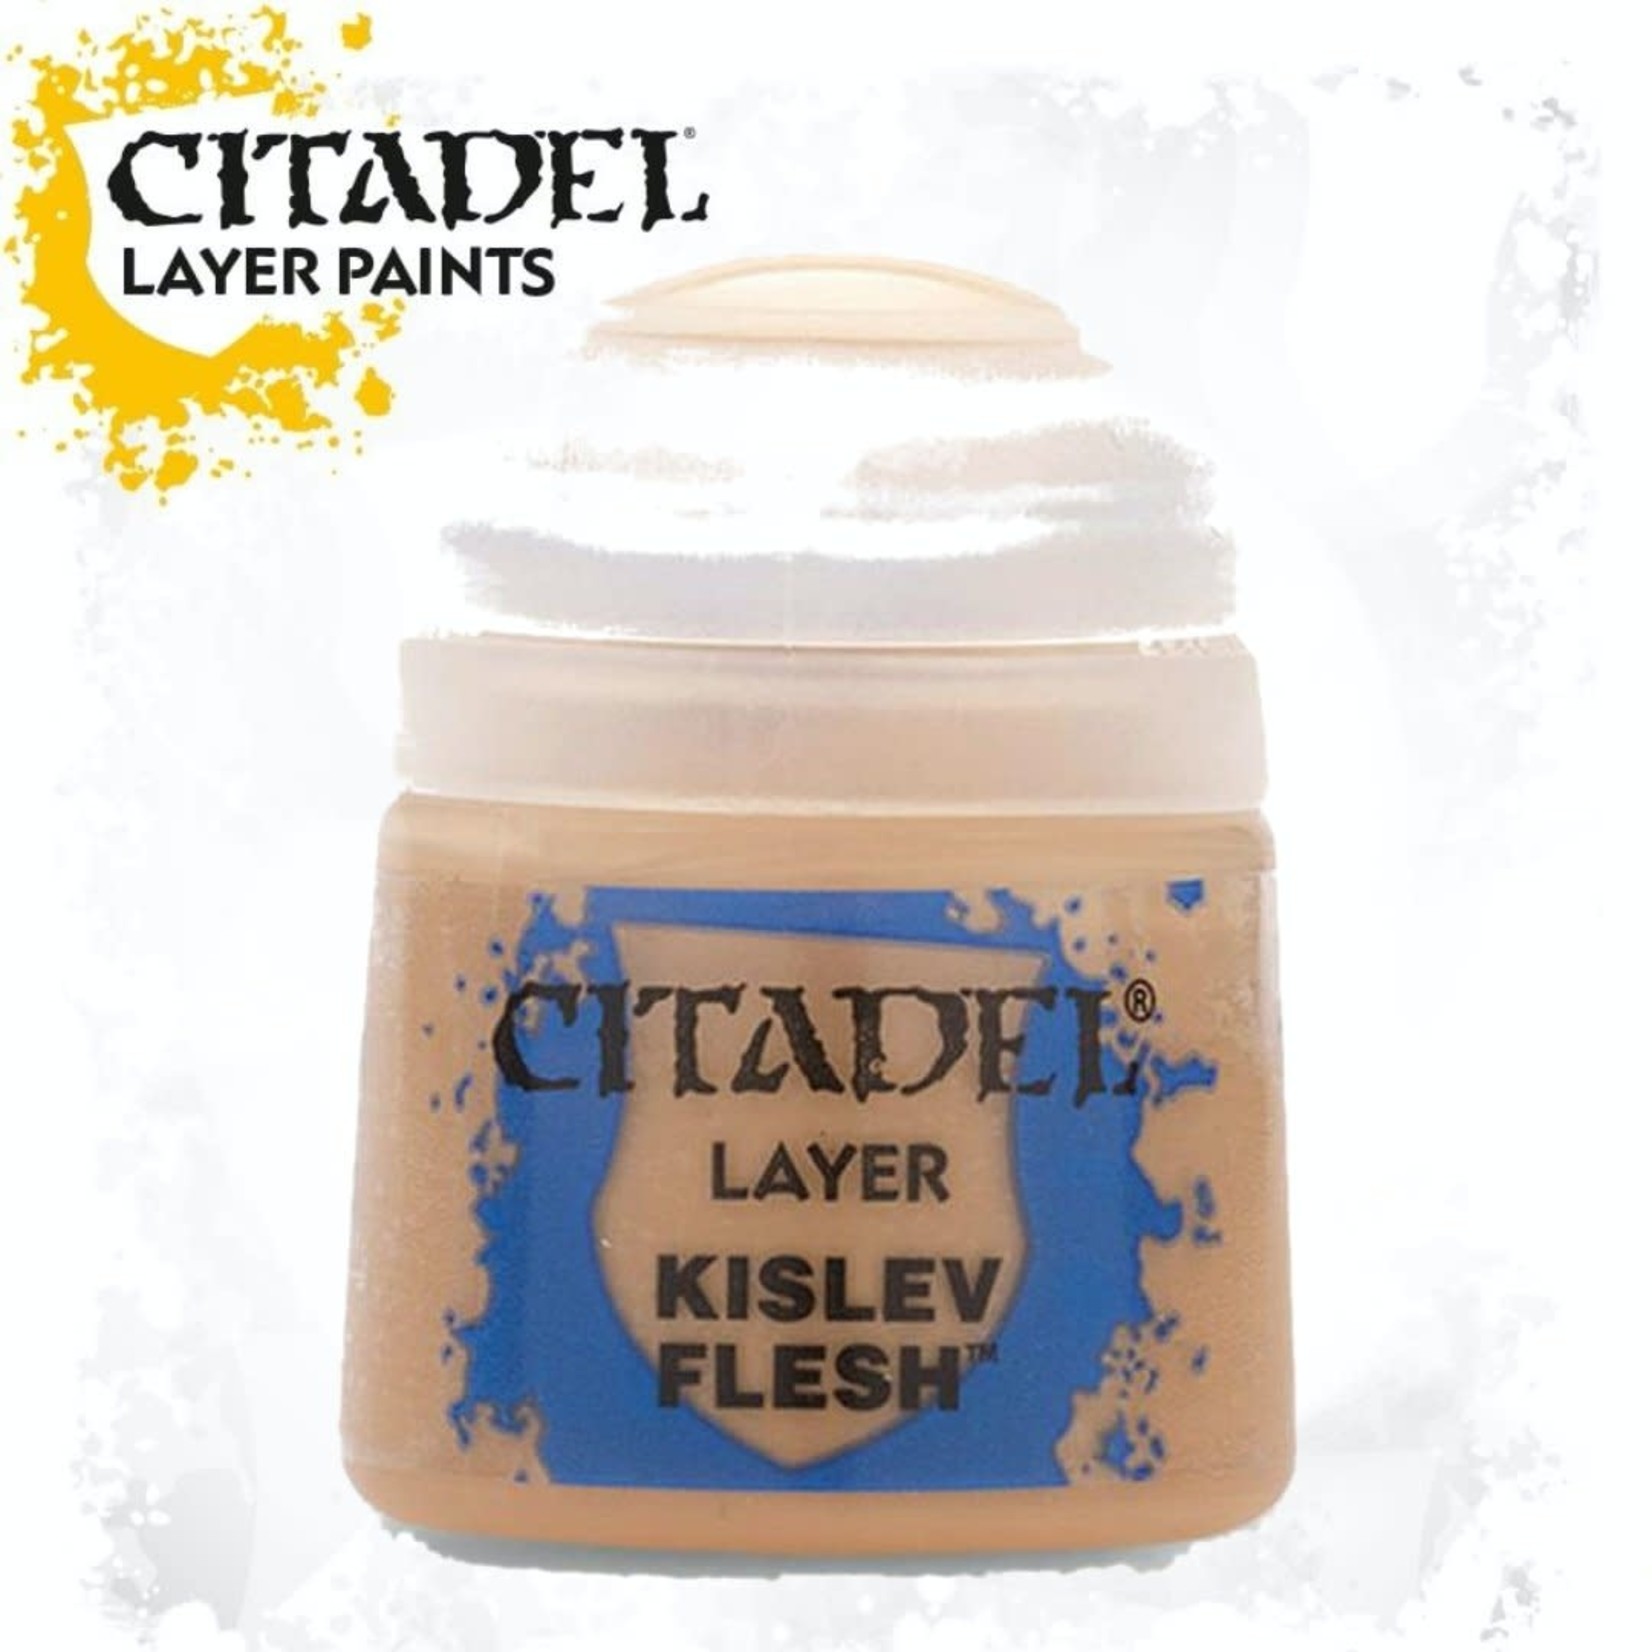 Citadel Citadel Paint - Layer: Kislev Flesh